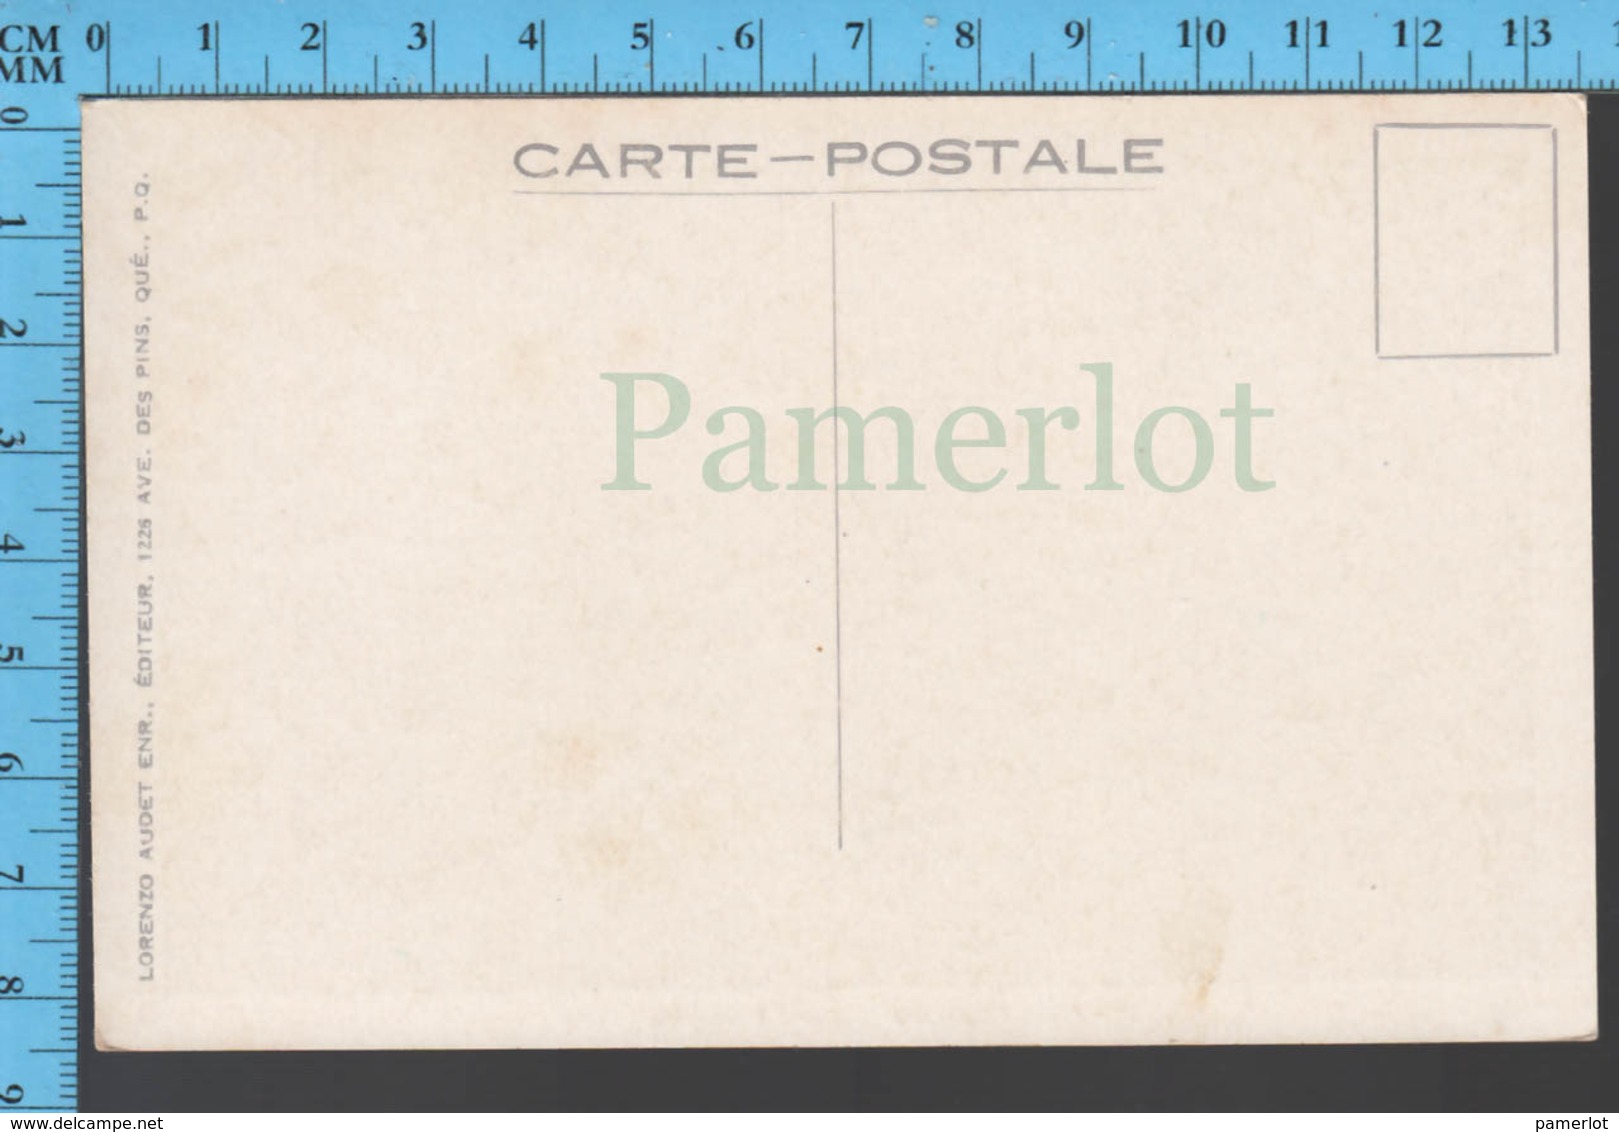 Montmorency Falls - Quebec - Hotel Kent House - Pub. Lorenzo Audet # 46 - Postcard Carte Postale - Québec - Les Rivières